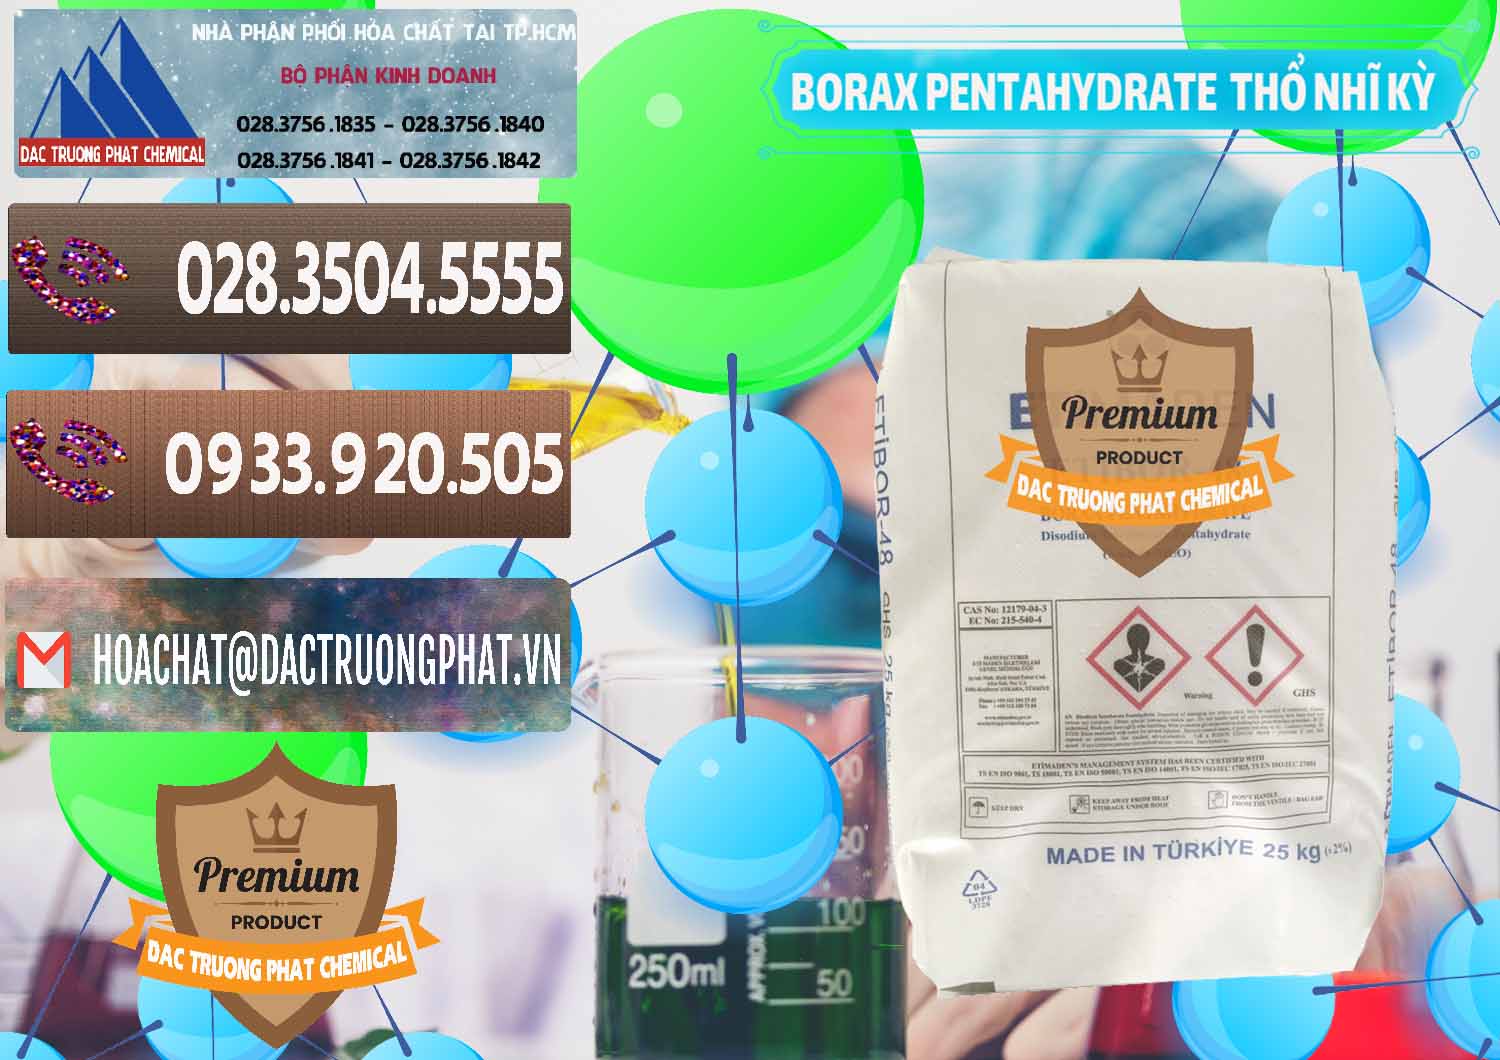 Nơi bán và cung cấp Borax Pentahydrate Thổ Nhĩ Kỳ Turkey - 0431 - Cty chuyên cung cấp ( kinh doanh ) hóa chất tại TP.HCM - hoachatviet.net